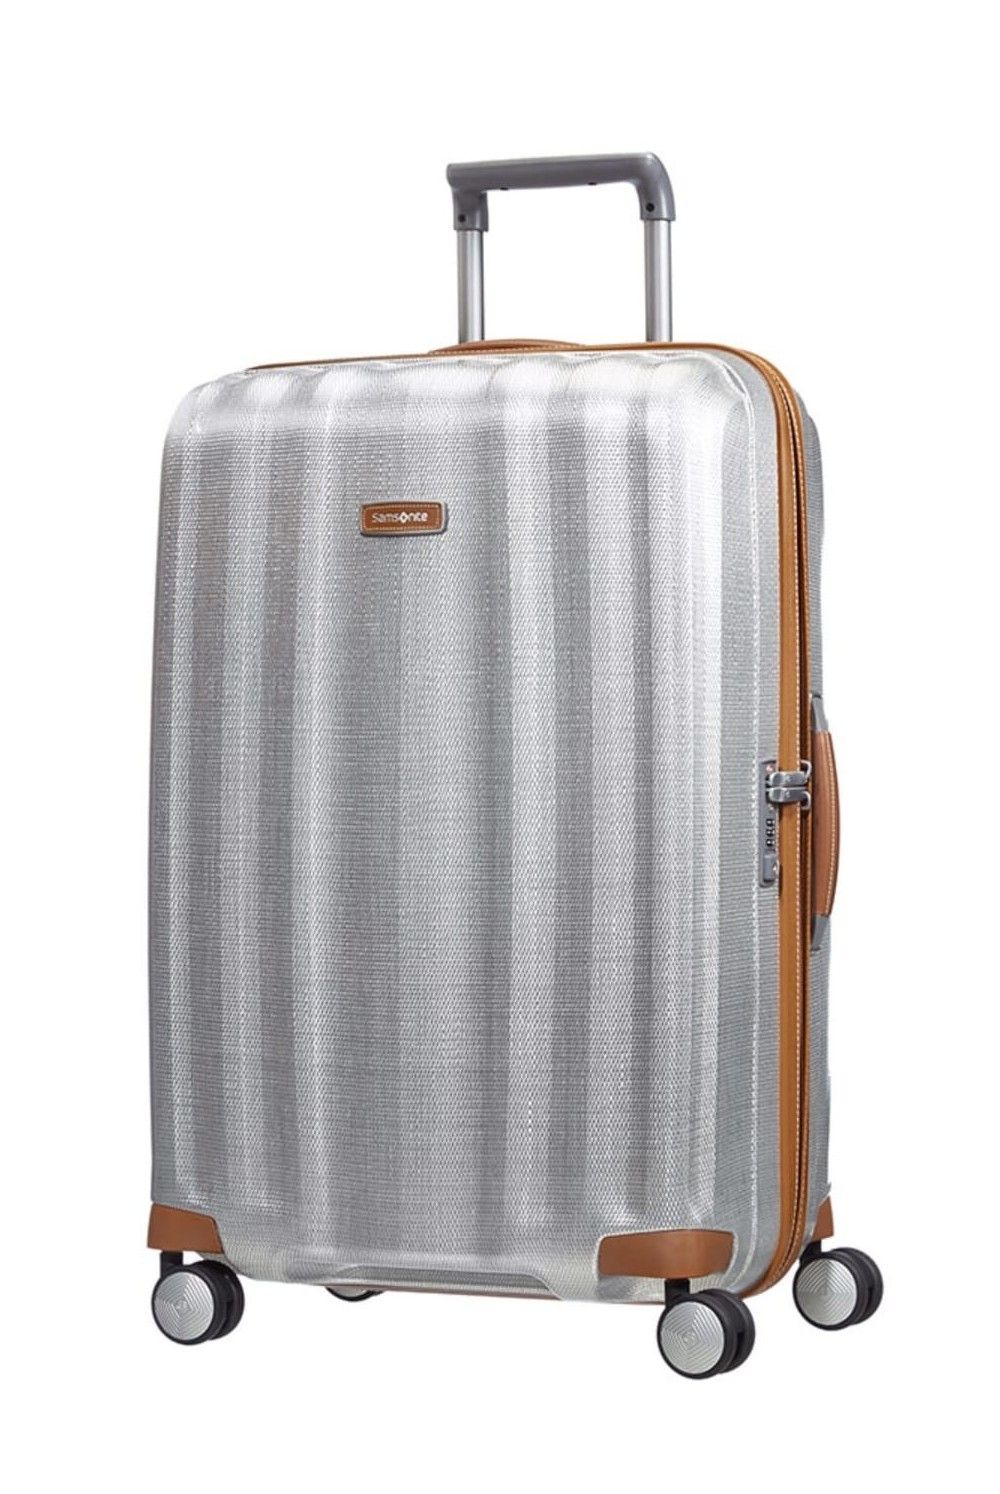 Samsonite Suitcase Lite Cube DLX 76cm 96Liter 4 wheel Suitcase